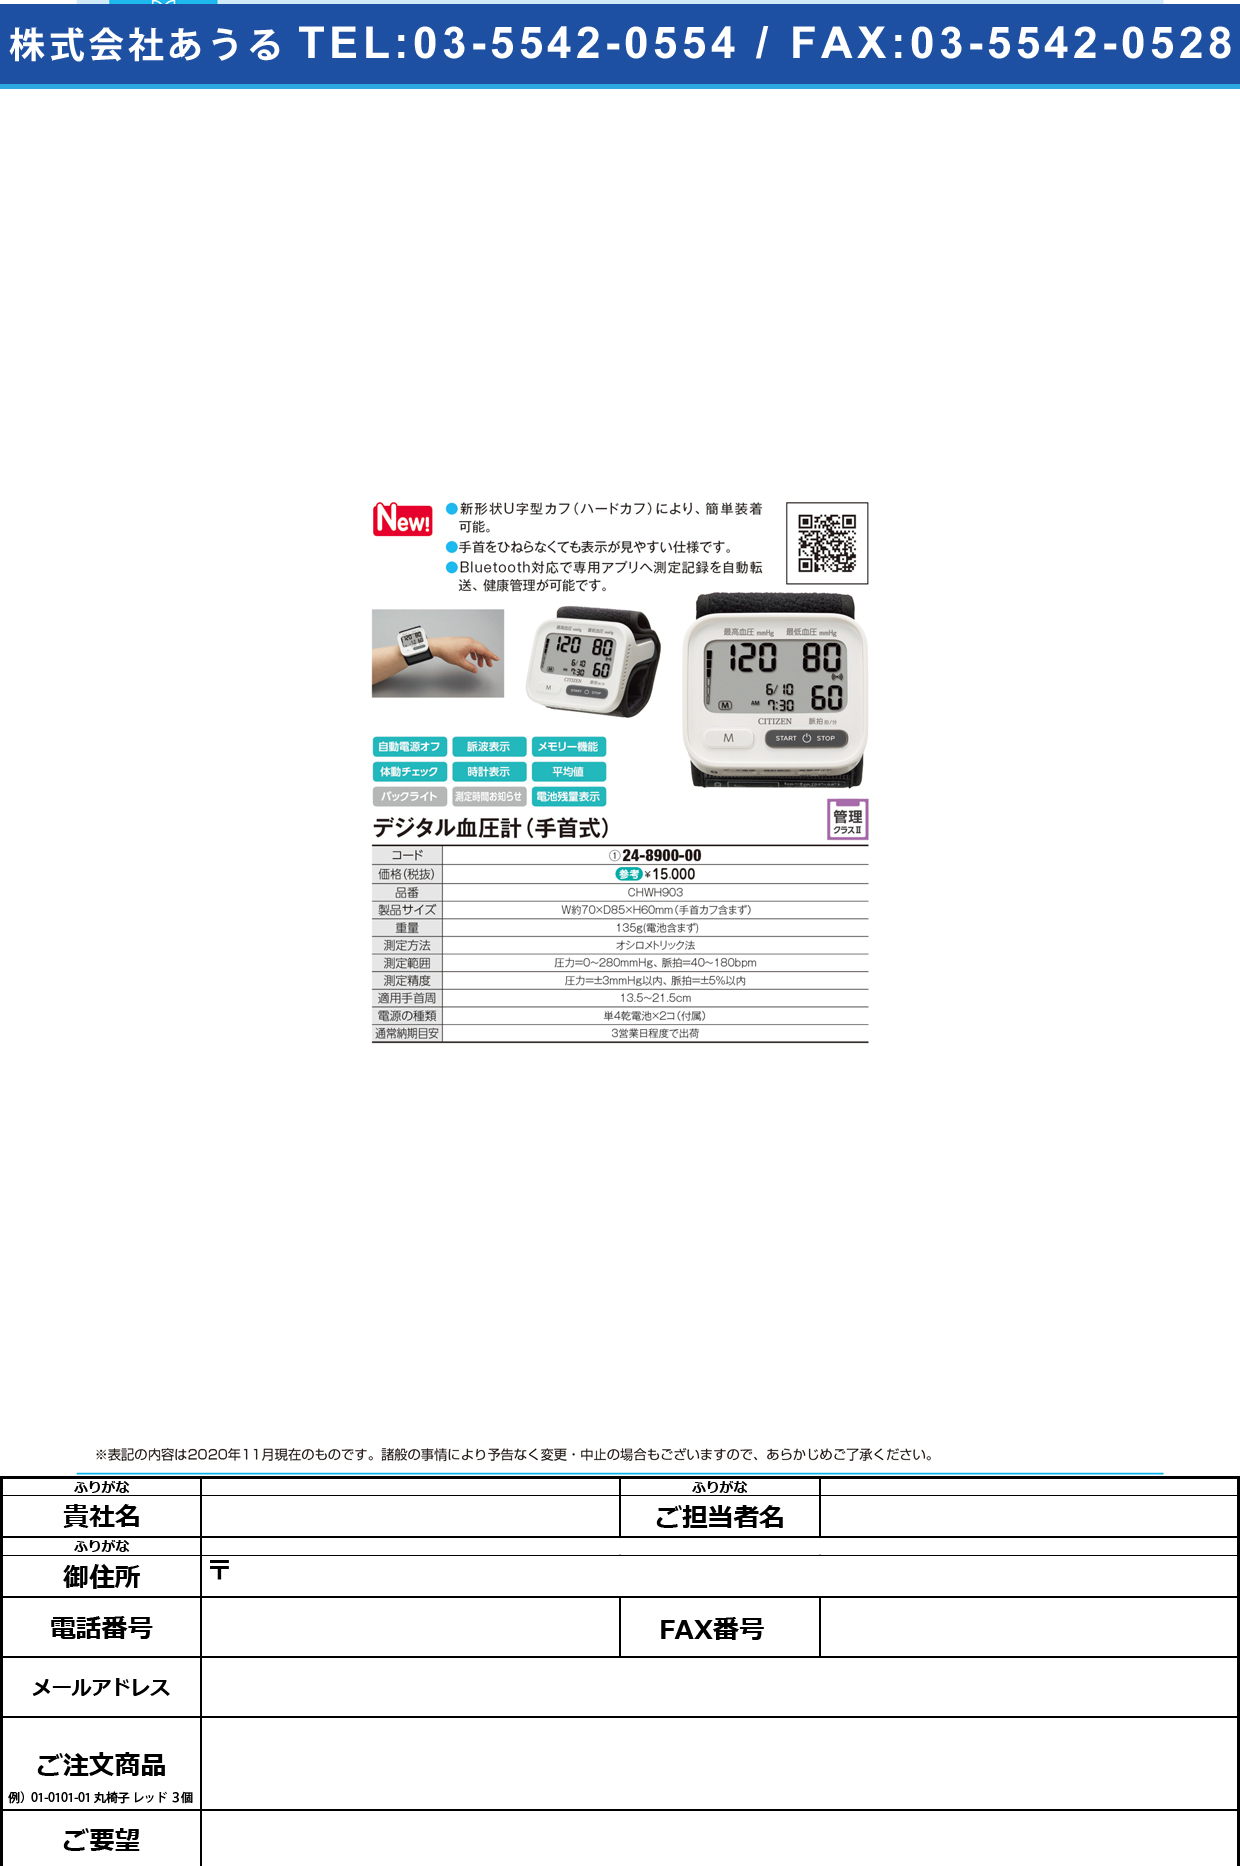 シチズン 手首式血圧計 CHWH903(ホワイト)CHWH903(ﾎﾜｲﾄ)(24-8900-00)【明成】(販売単位:1)